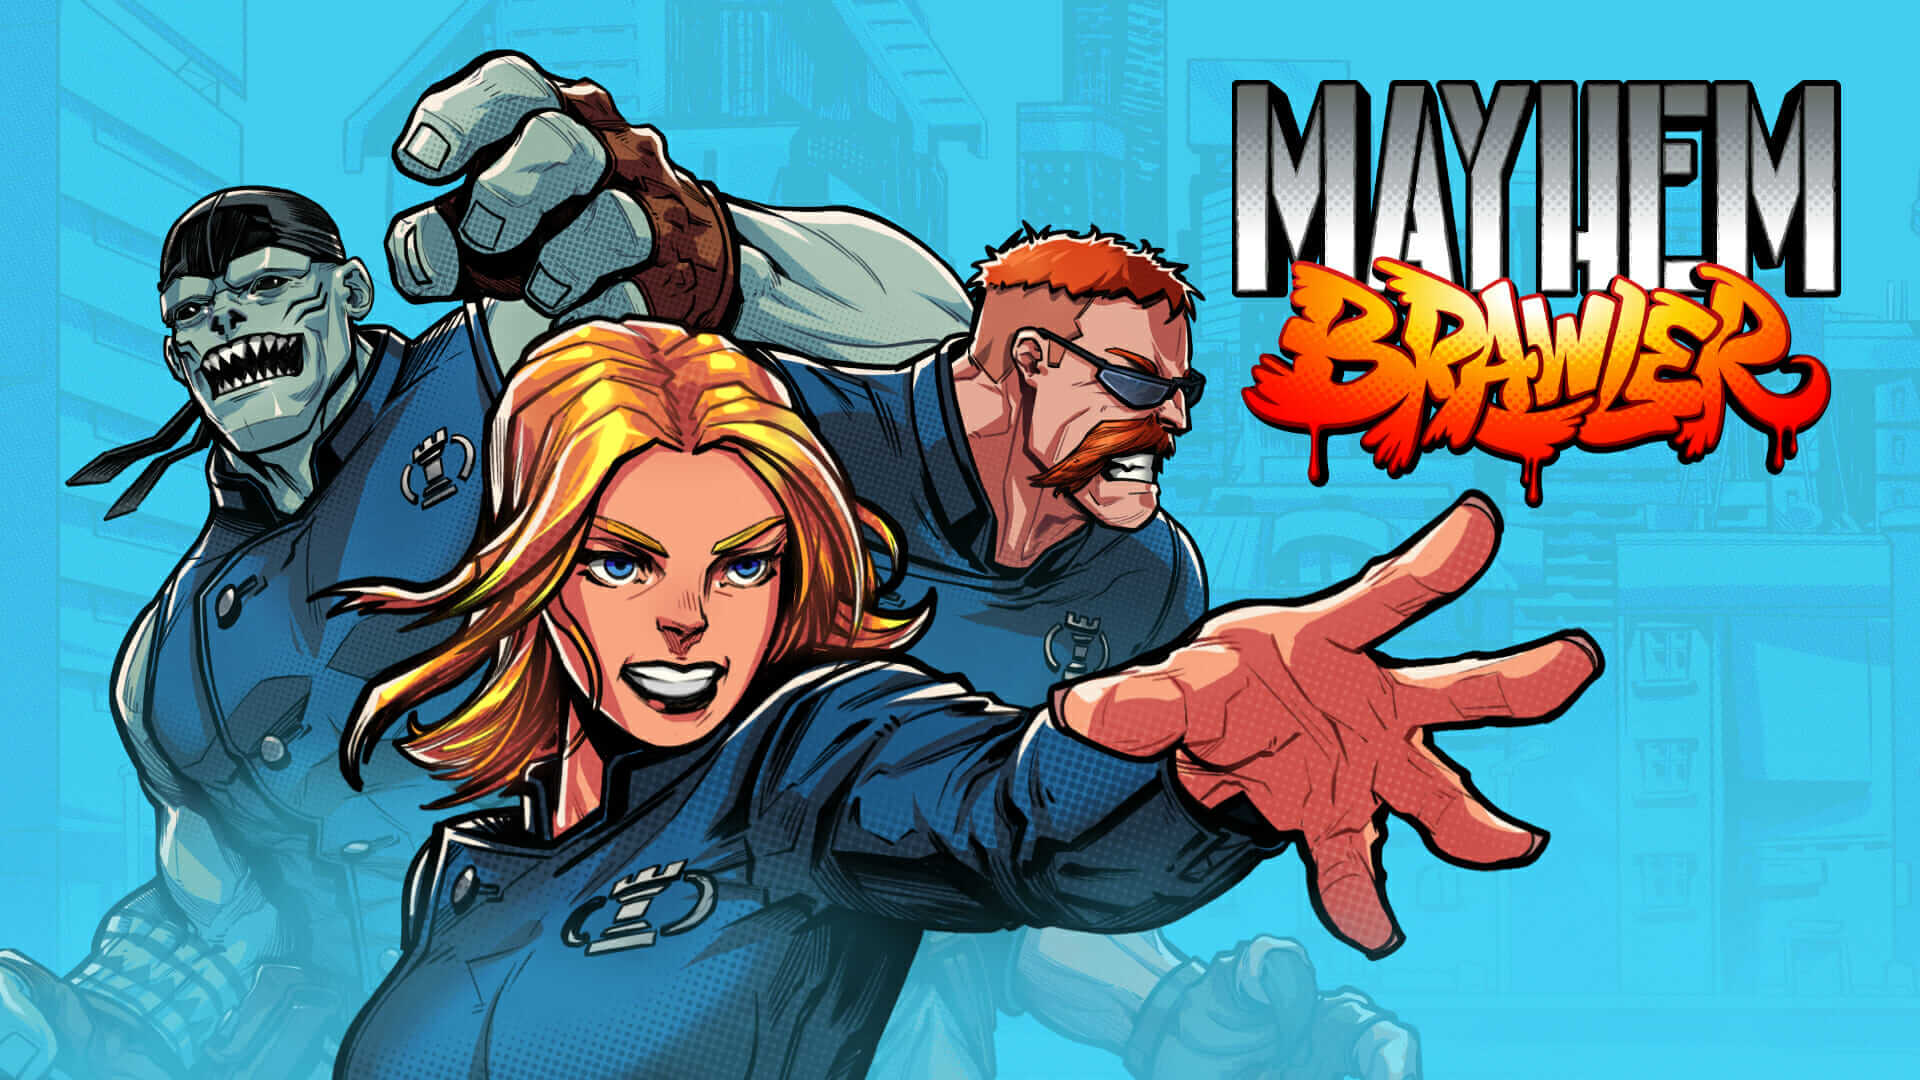 Mayhem Brawler/ Отряд на дежурстве-вторая сюжетная линия / Прохождение #4